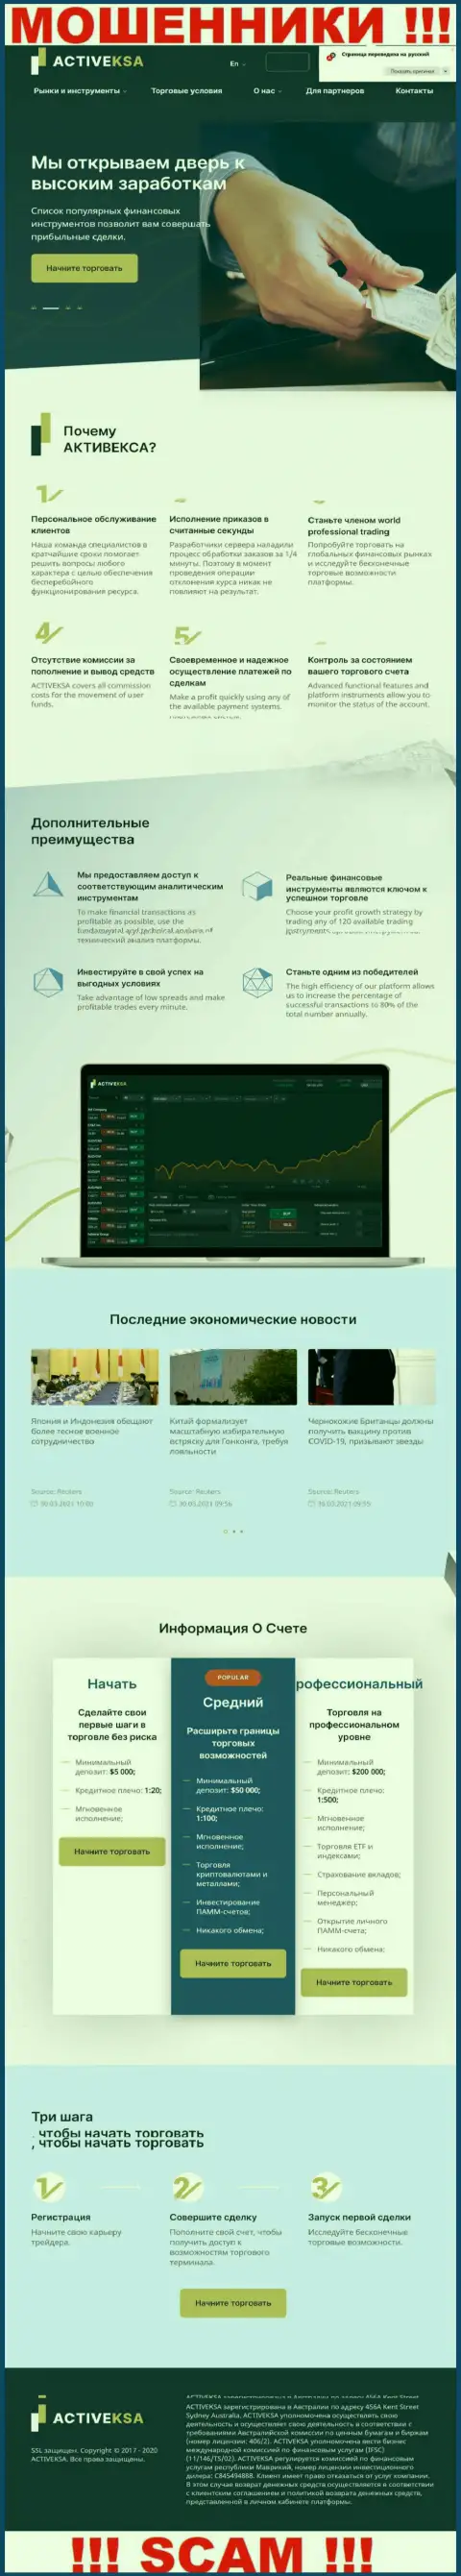 Активекса Ком - это официальный web-портал мошенников Активекса Ком